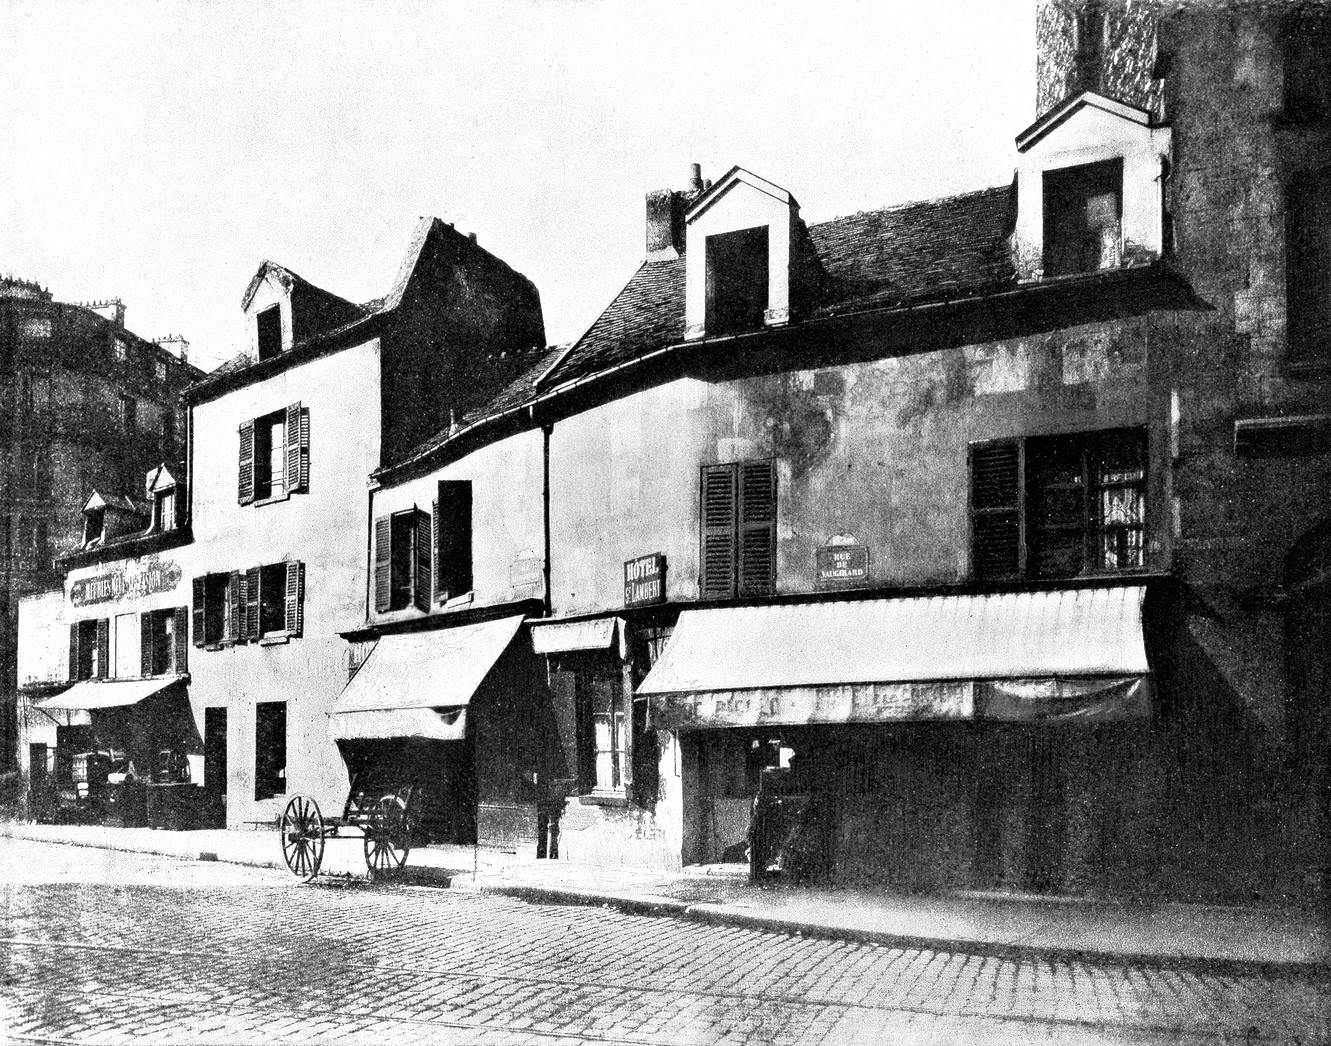 Buildings in the road 'Rue de Vaugirard', Hotel St. Lambert (centre), 1890s